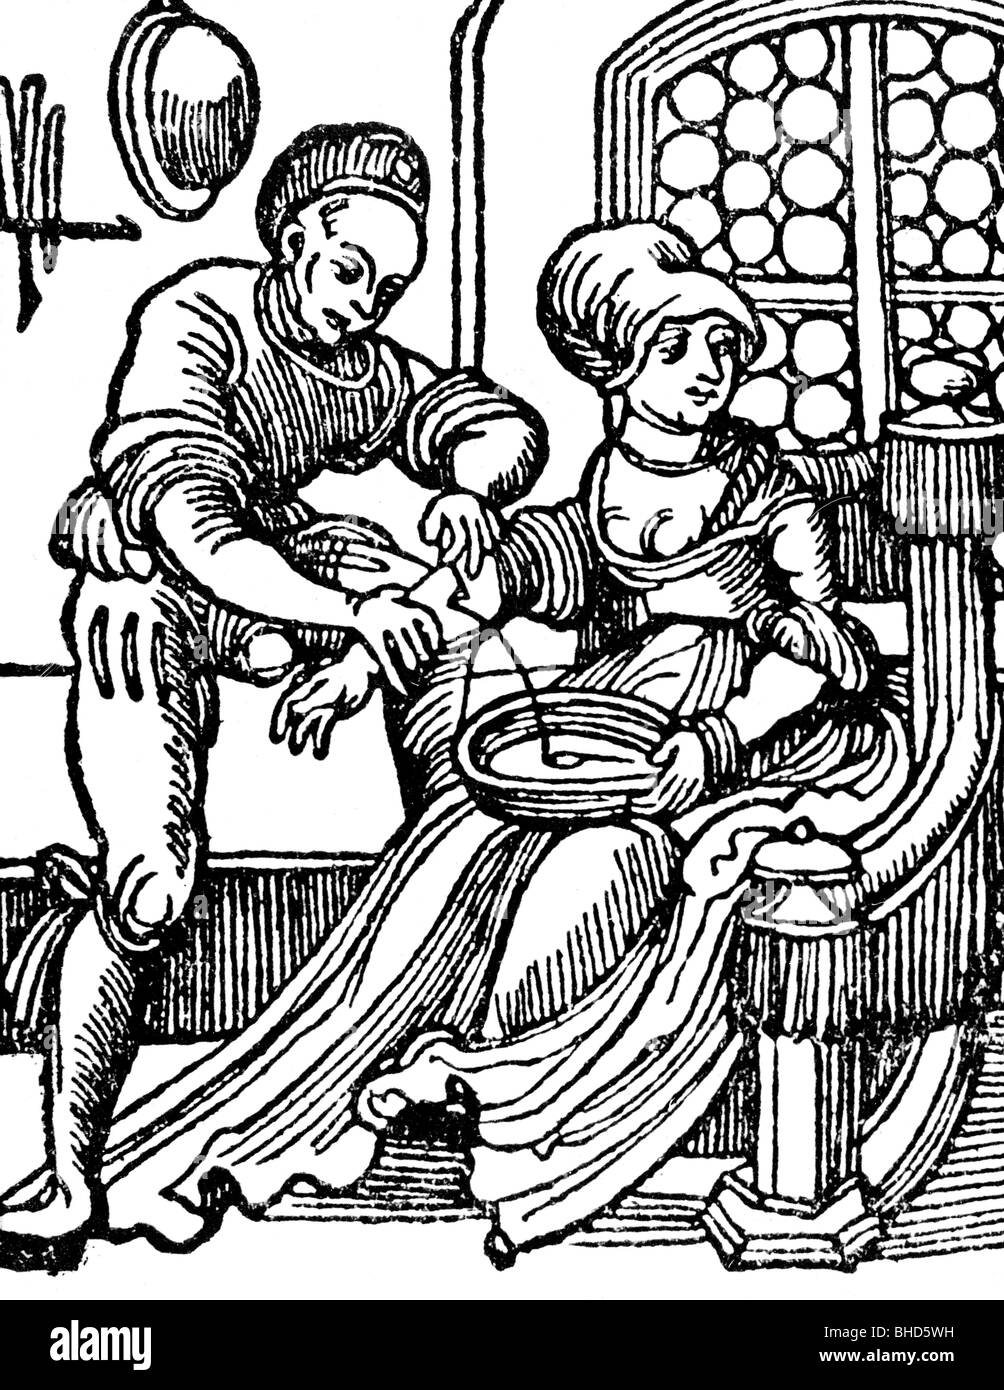 Medicina, trattamento, salasso / venesection, una signora durante la procedura salasso, xilografia, 1520, rinascimentali del XVI sec. Foto Stock